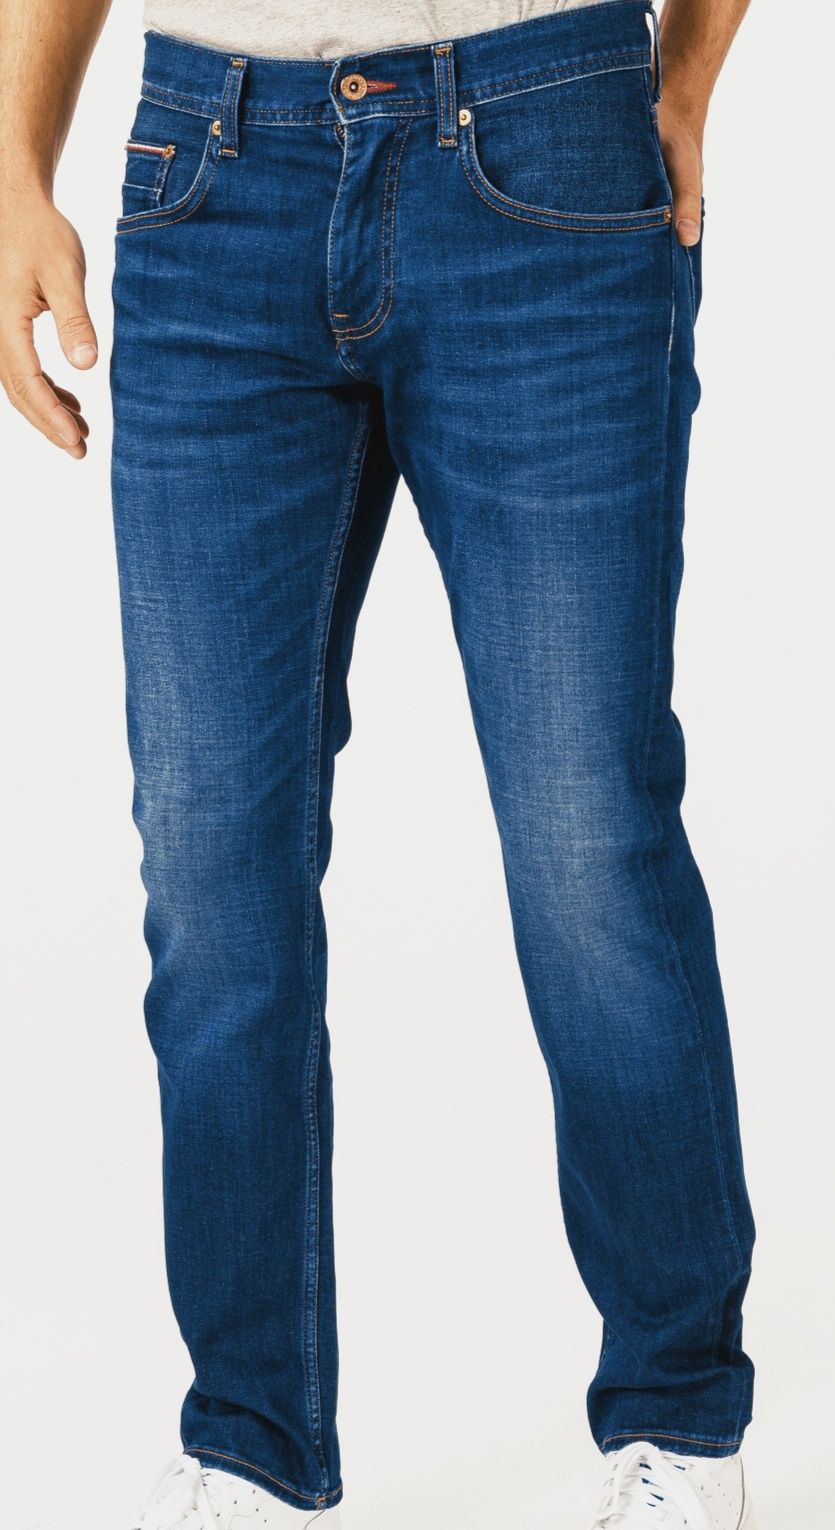 Calças de ganga / Jeans originais da Tommy Hilfiger novos 42/34